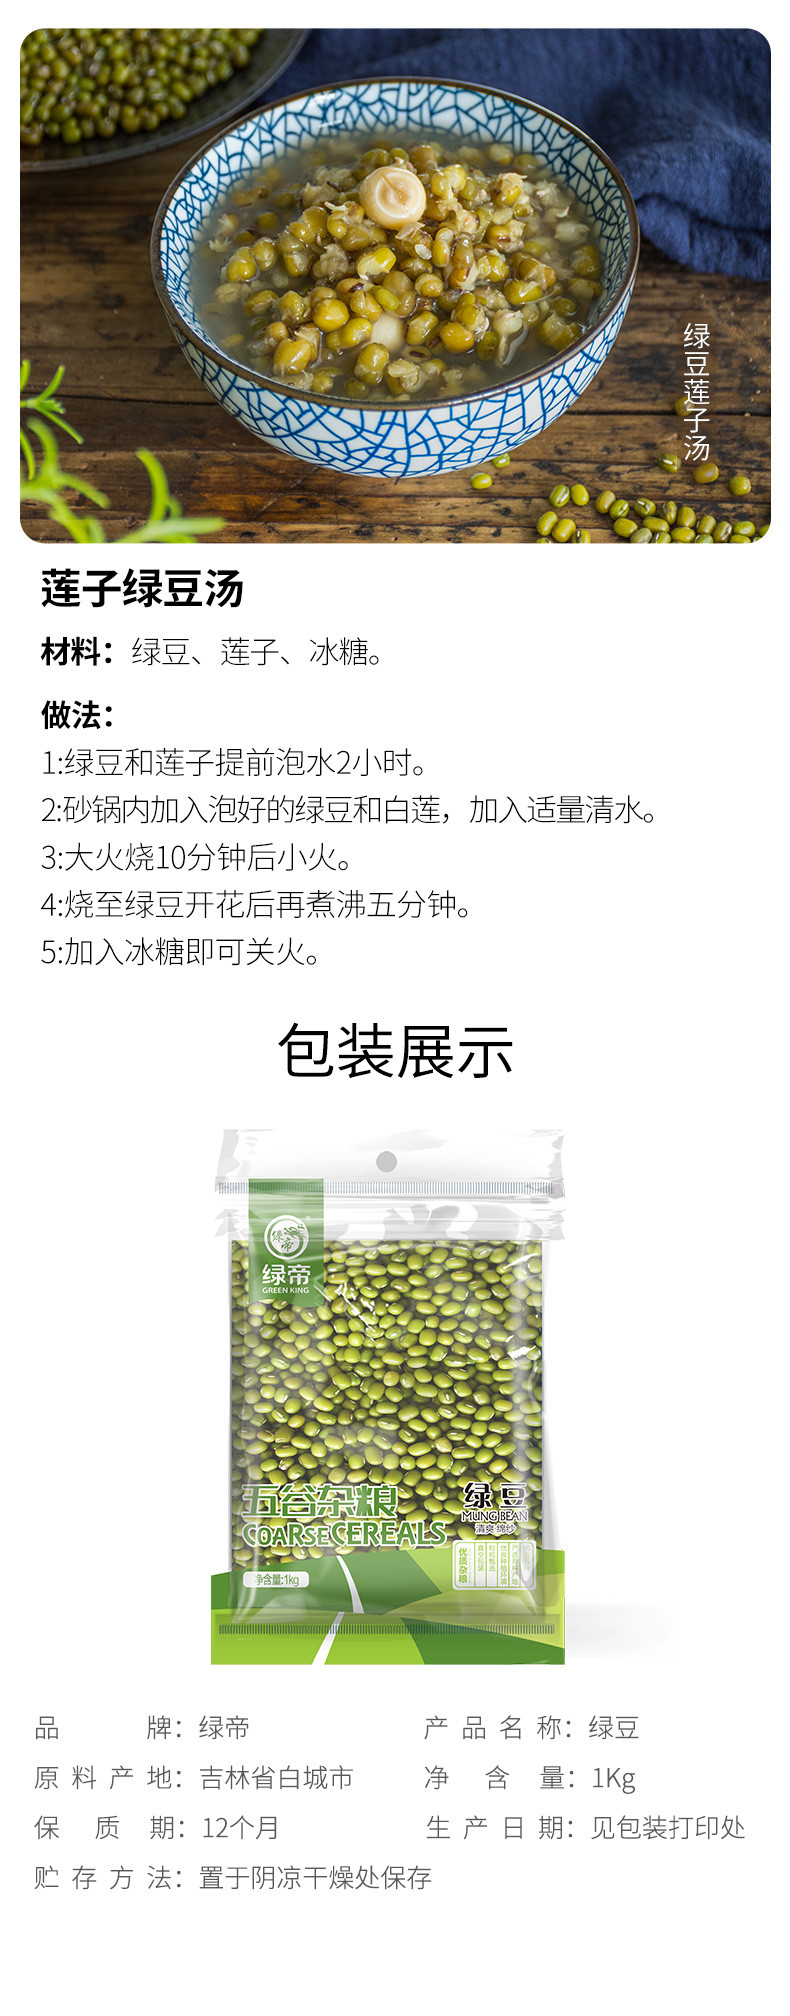 绿帝 绿豆1kg